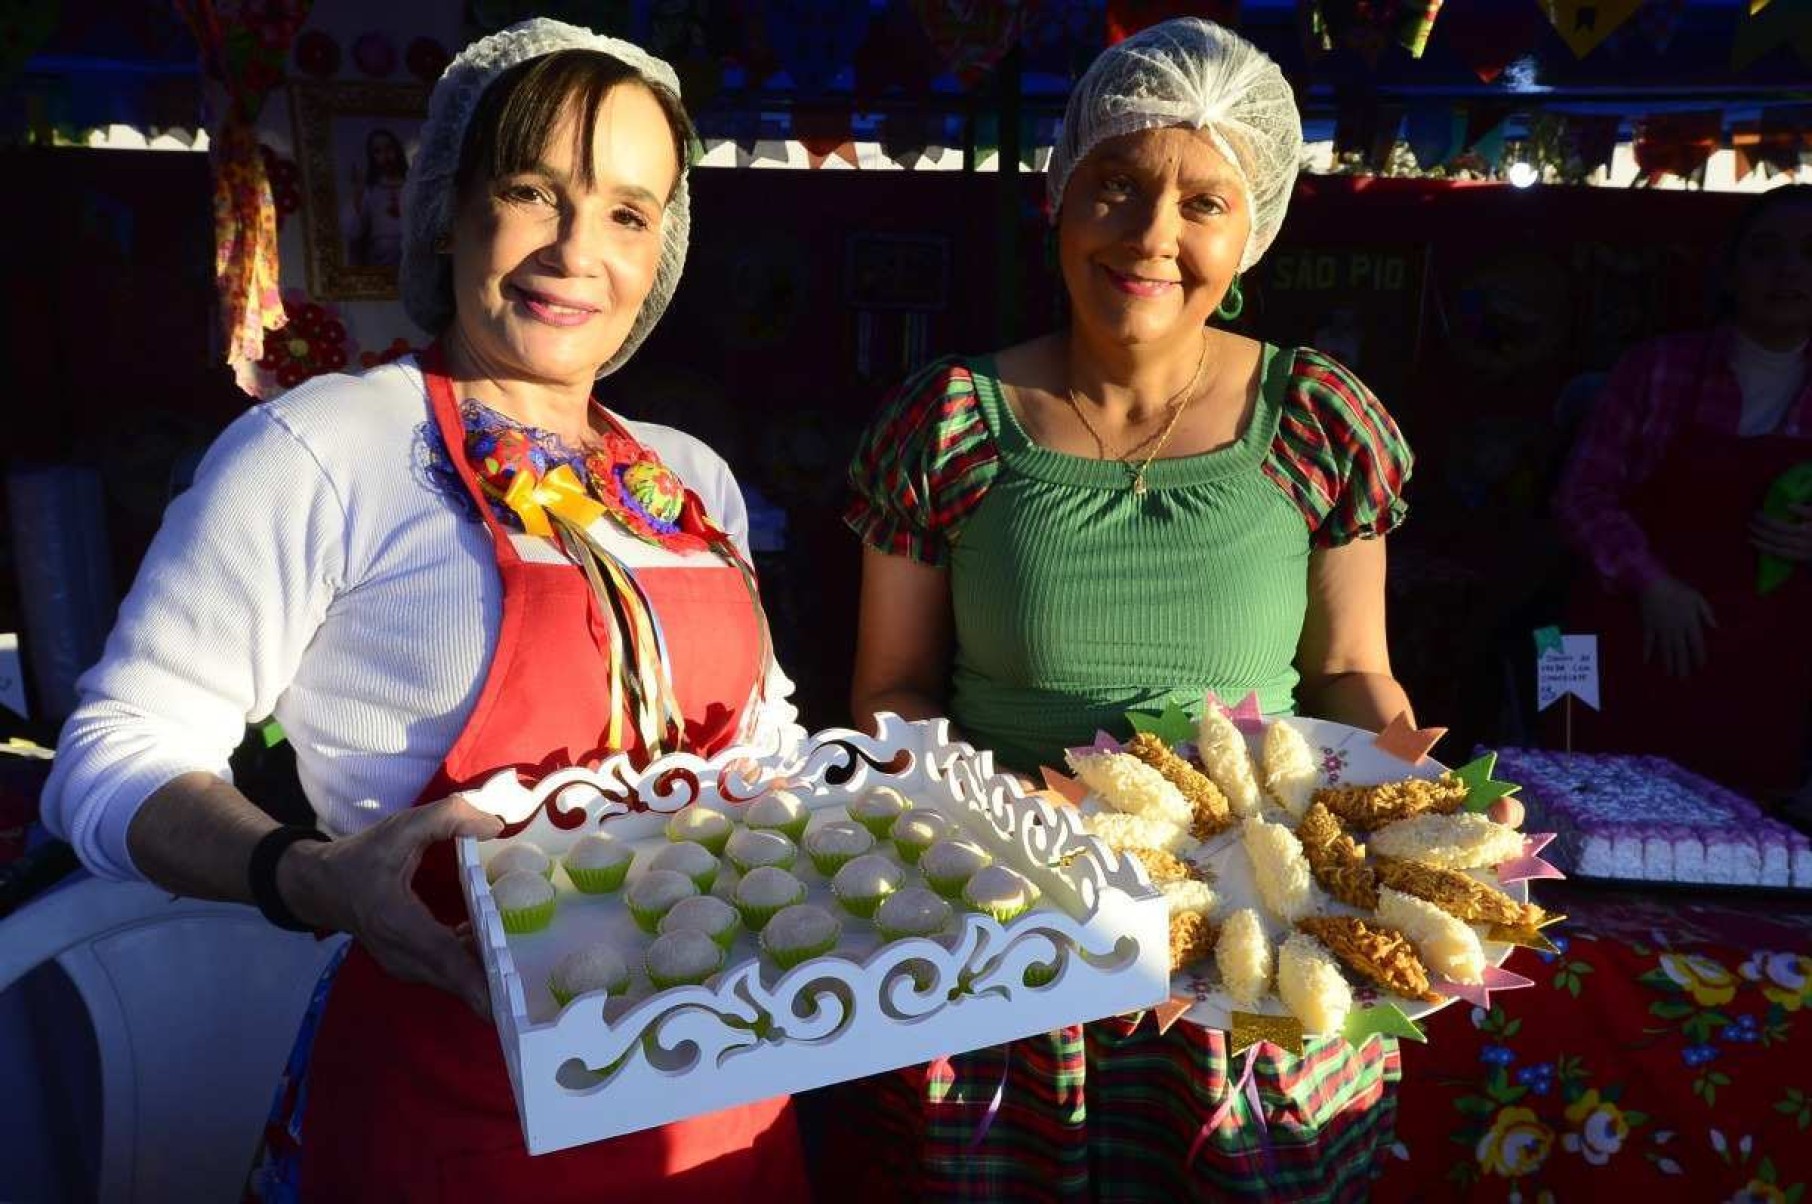  Mônica Libardi e Karine Guedes juntas na barraquinha dos doces para ajudar a igreja